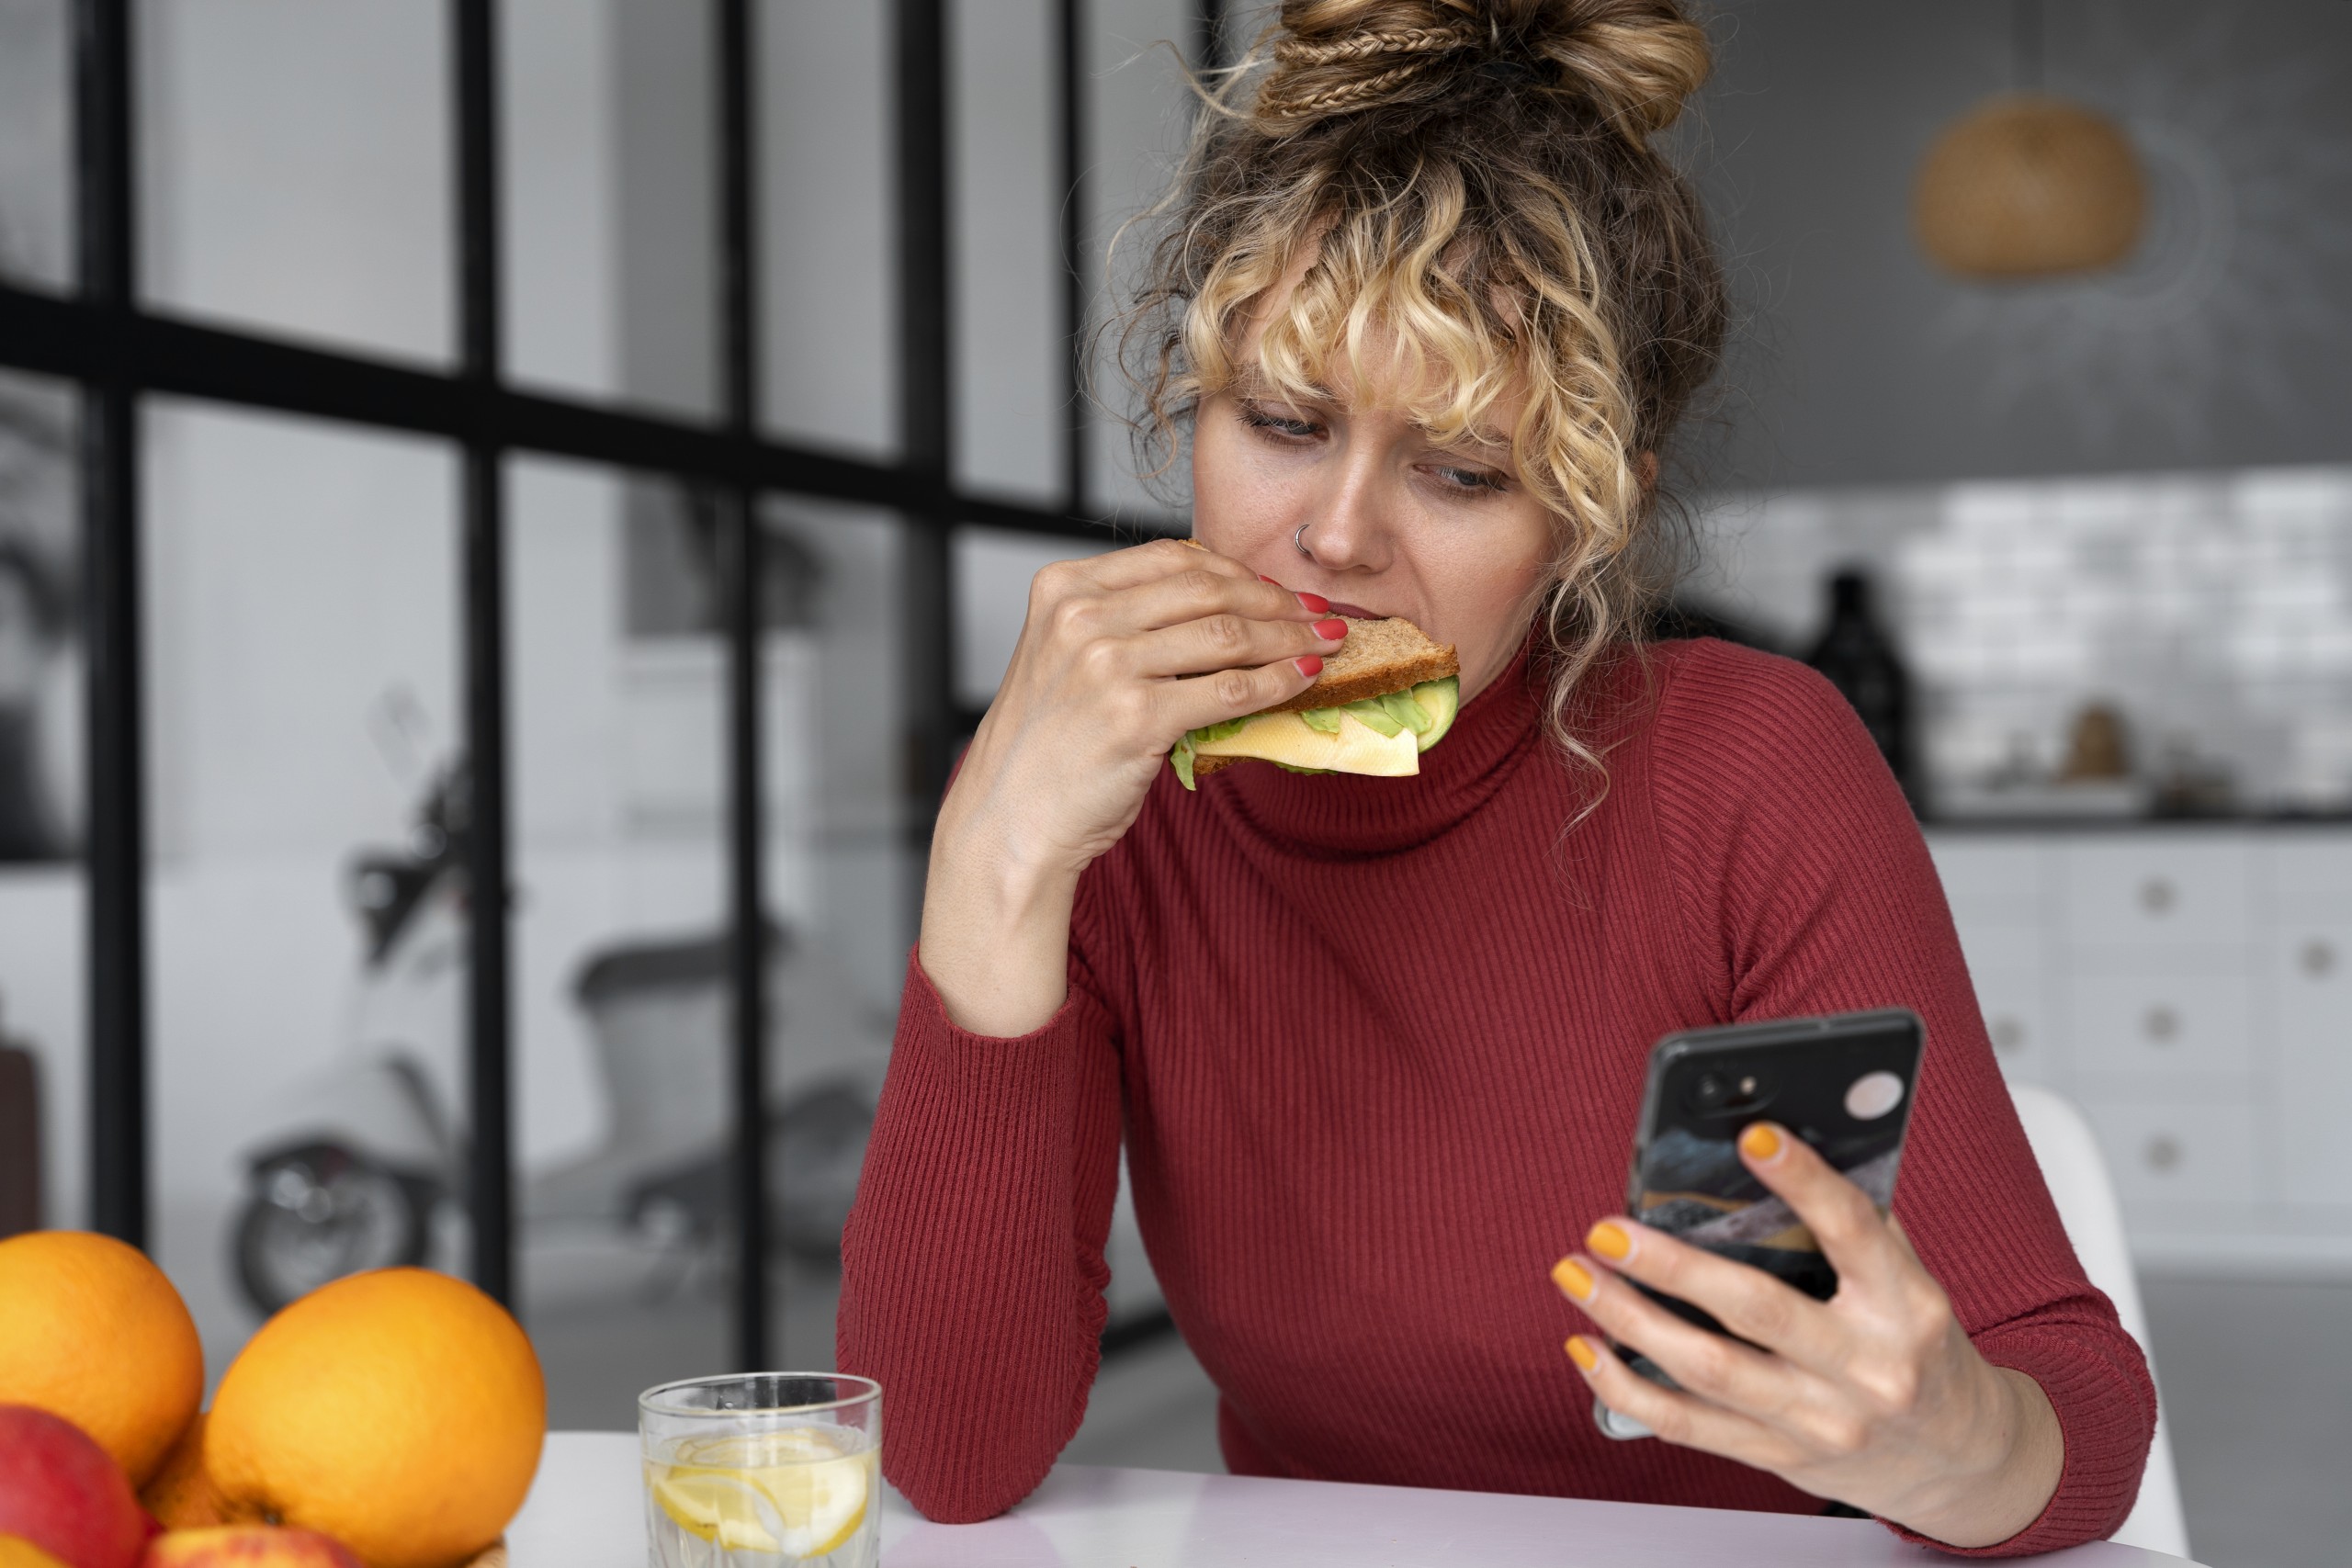 mujer rubia con pelo recogido polera roja mirando su celular mientras come un sándwich.